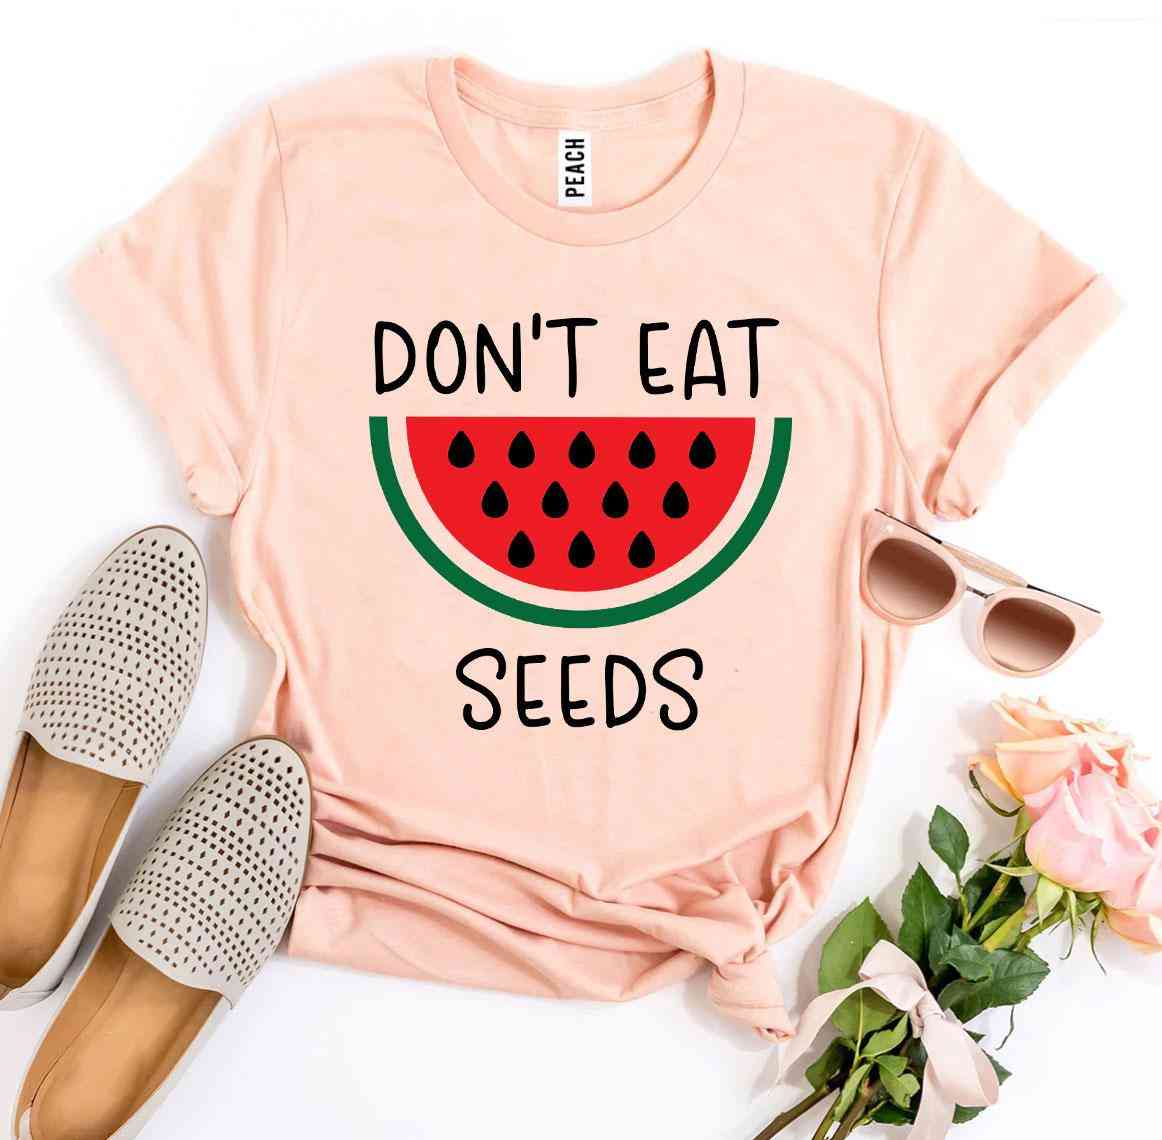 ät inte t-shirt med tryck av vattenmelonfrön